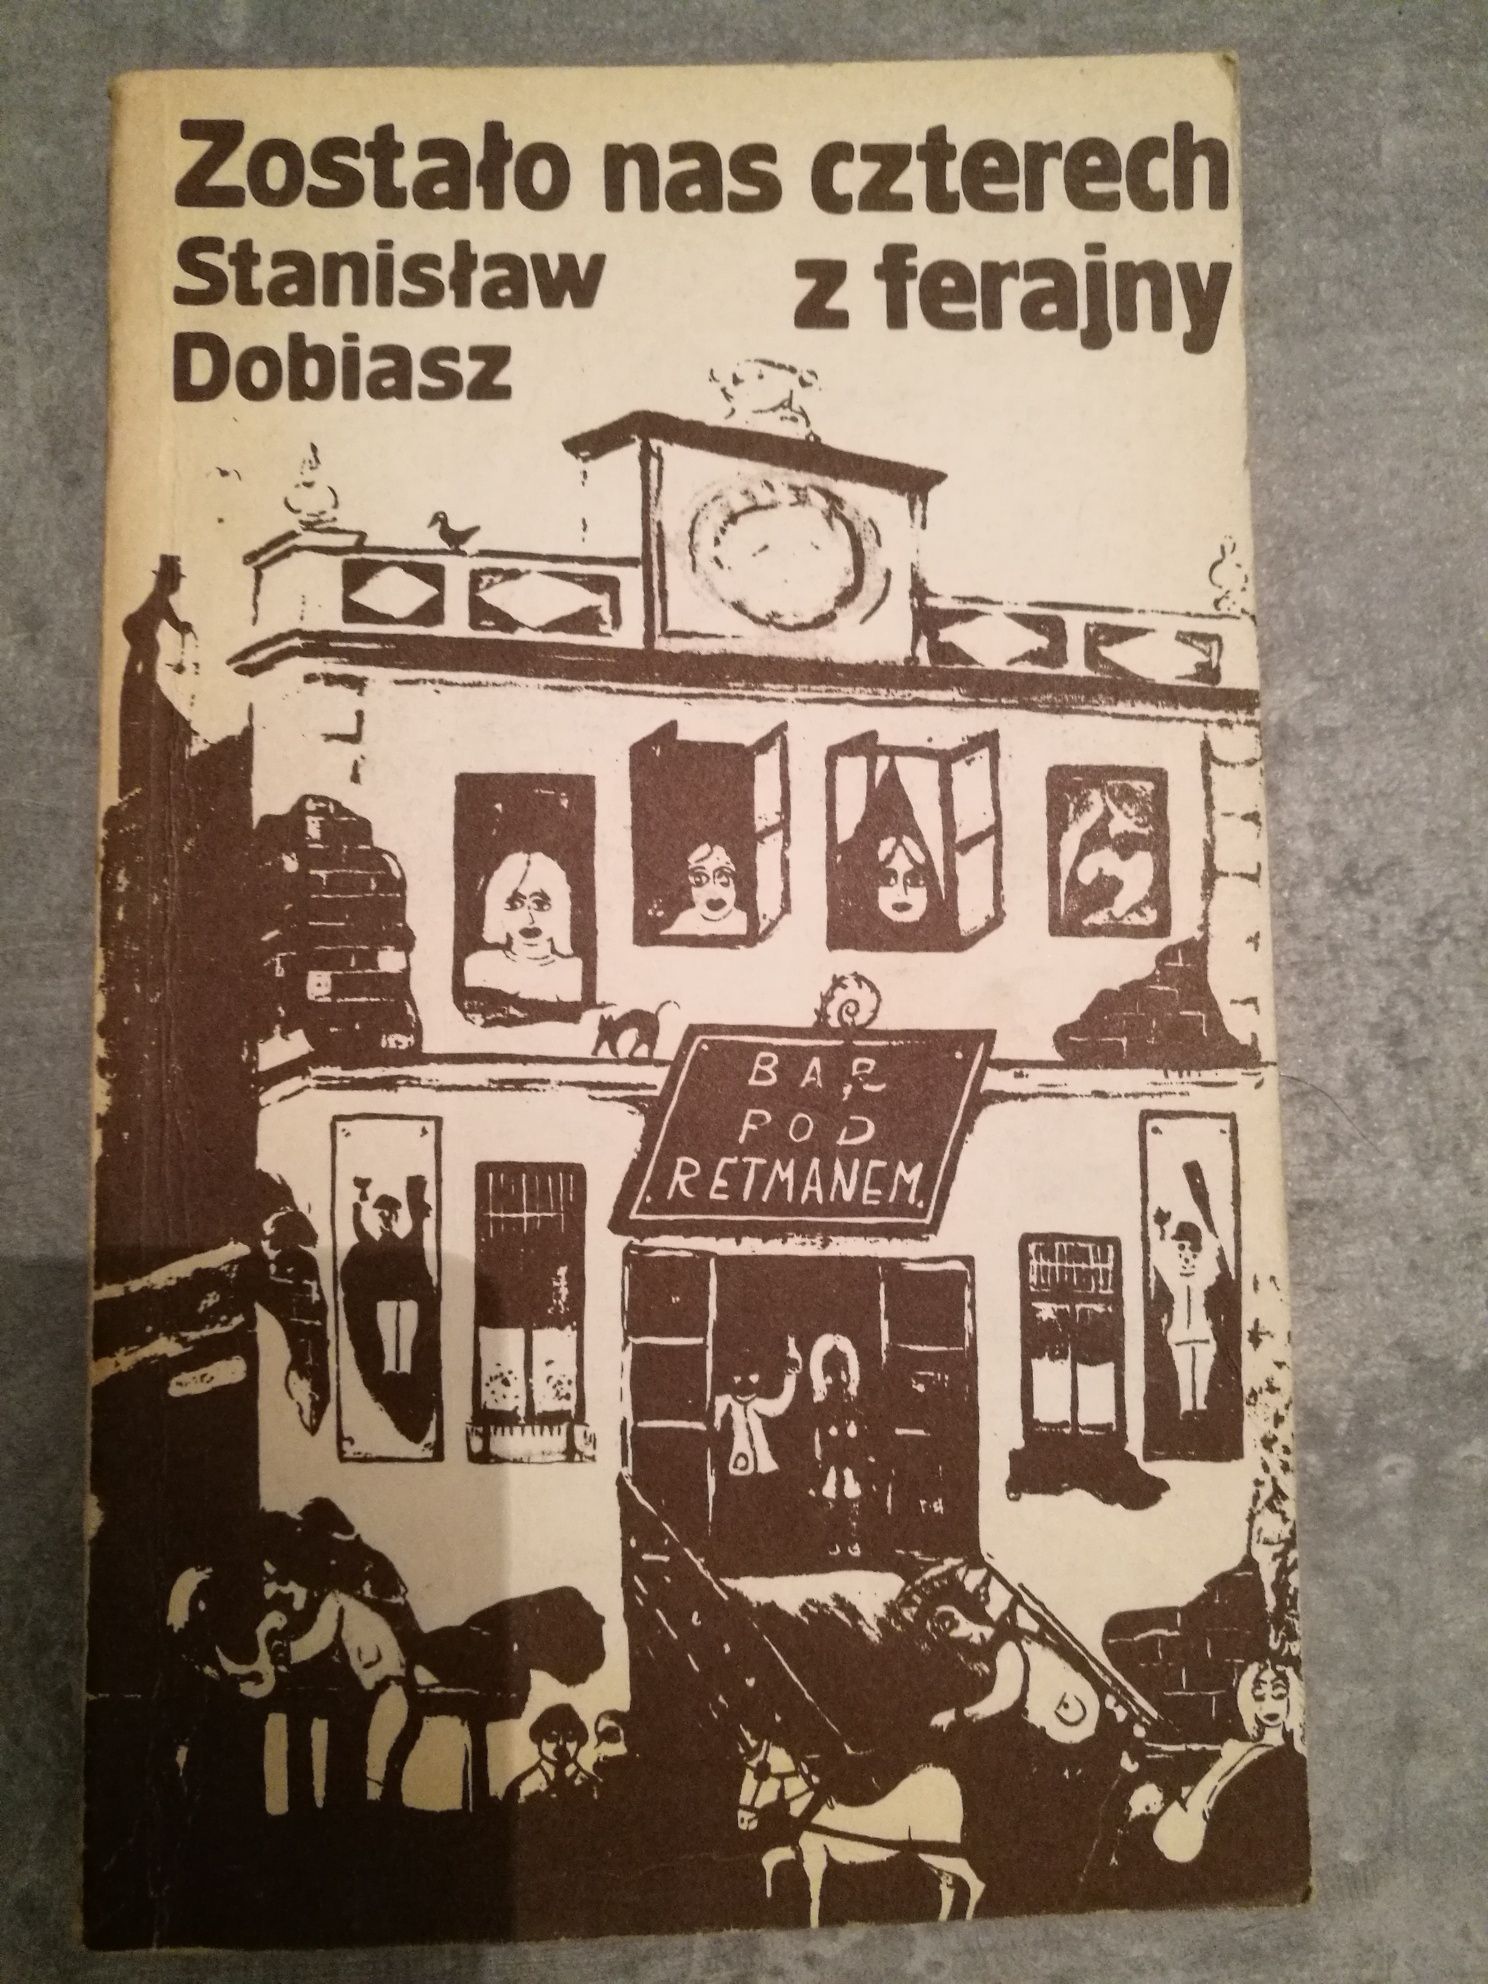 Zostało nas czterech z ferajny, książka Stanisława Dobiasza 1983 rok.